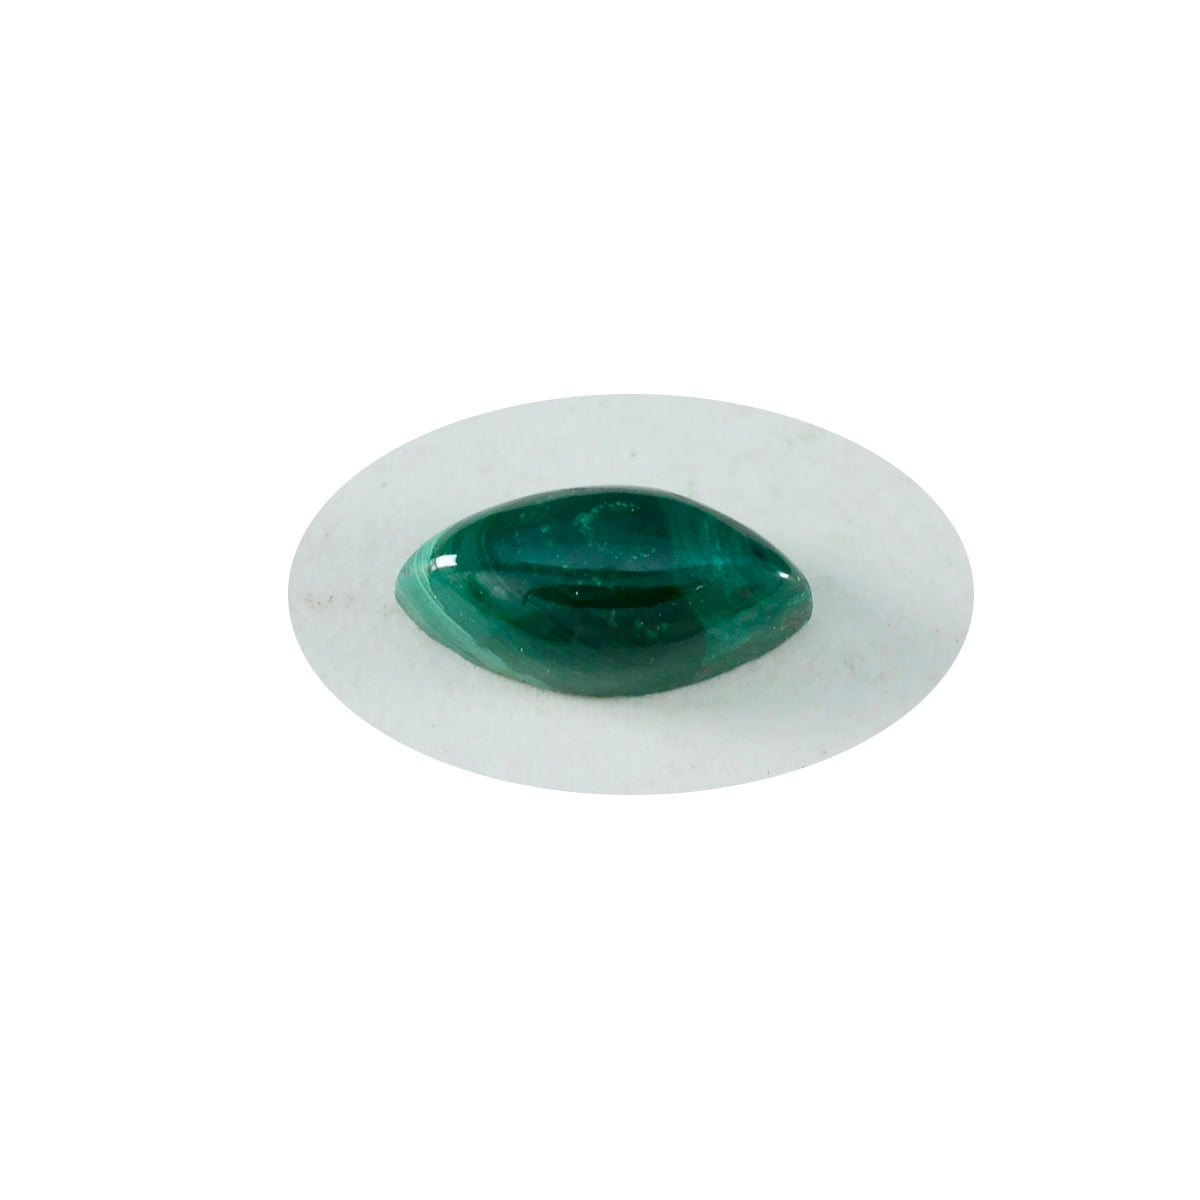 Riyogems 1 Stück grüner Malachit-Cabochon, 5 x 10 mm, Marquise-Form, hübscher Qualitäts-Edelstein